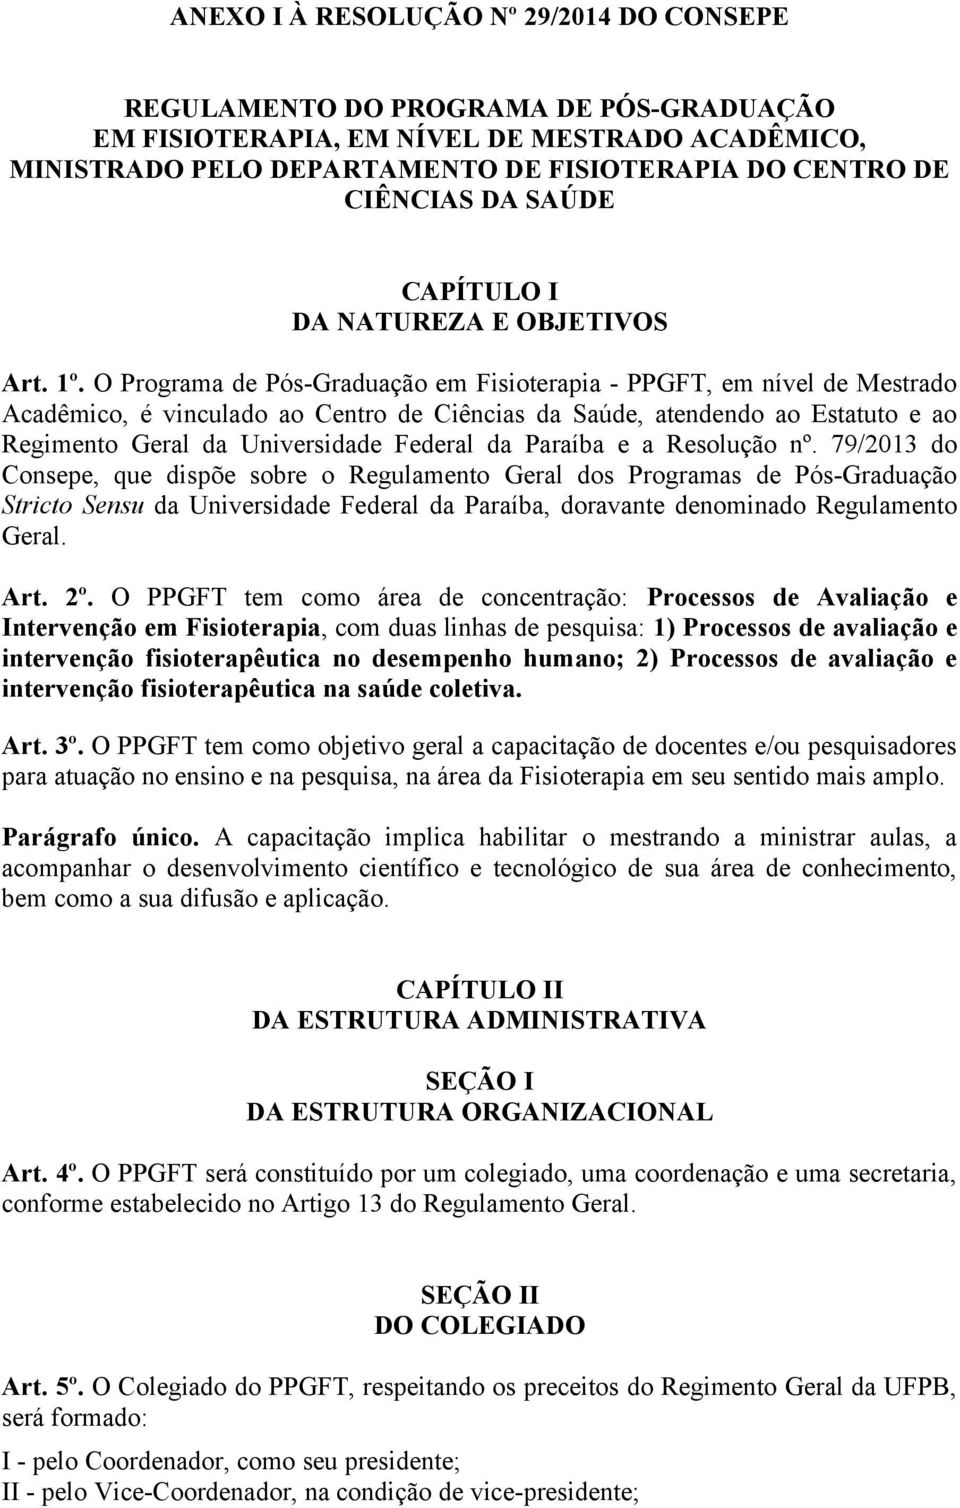 O Programa de Pós-Graduação em - PPGFT, em nível de Mestrado Acadêmico, é vinculado ao Centro de Ciências da Saúde, atendendo ao Estatuto e ao Regimento Geral da Universidade Federal da Paraíba e a